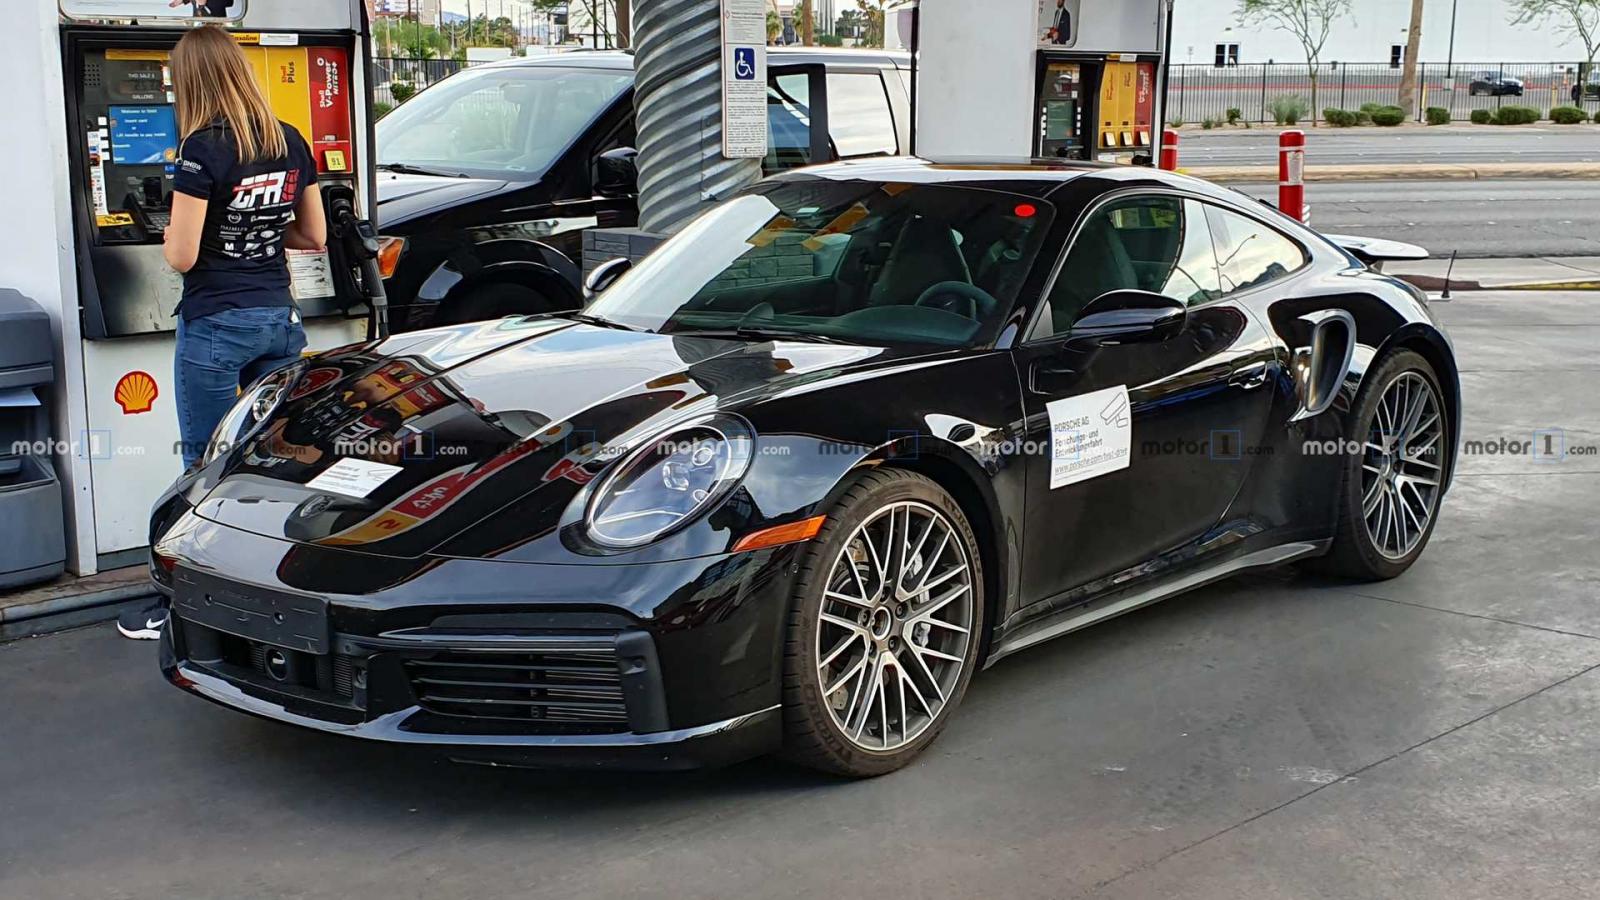 Porsche 911 Turbo thế hệ mới lộ ảnh chạy thử tại Nevada.